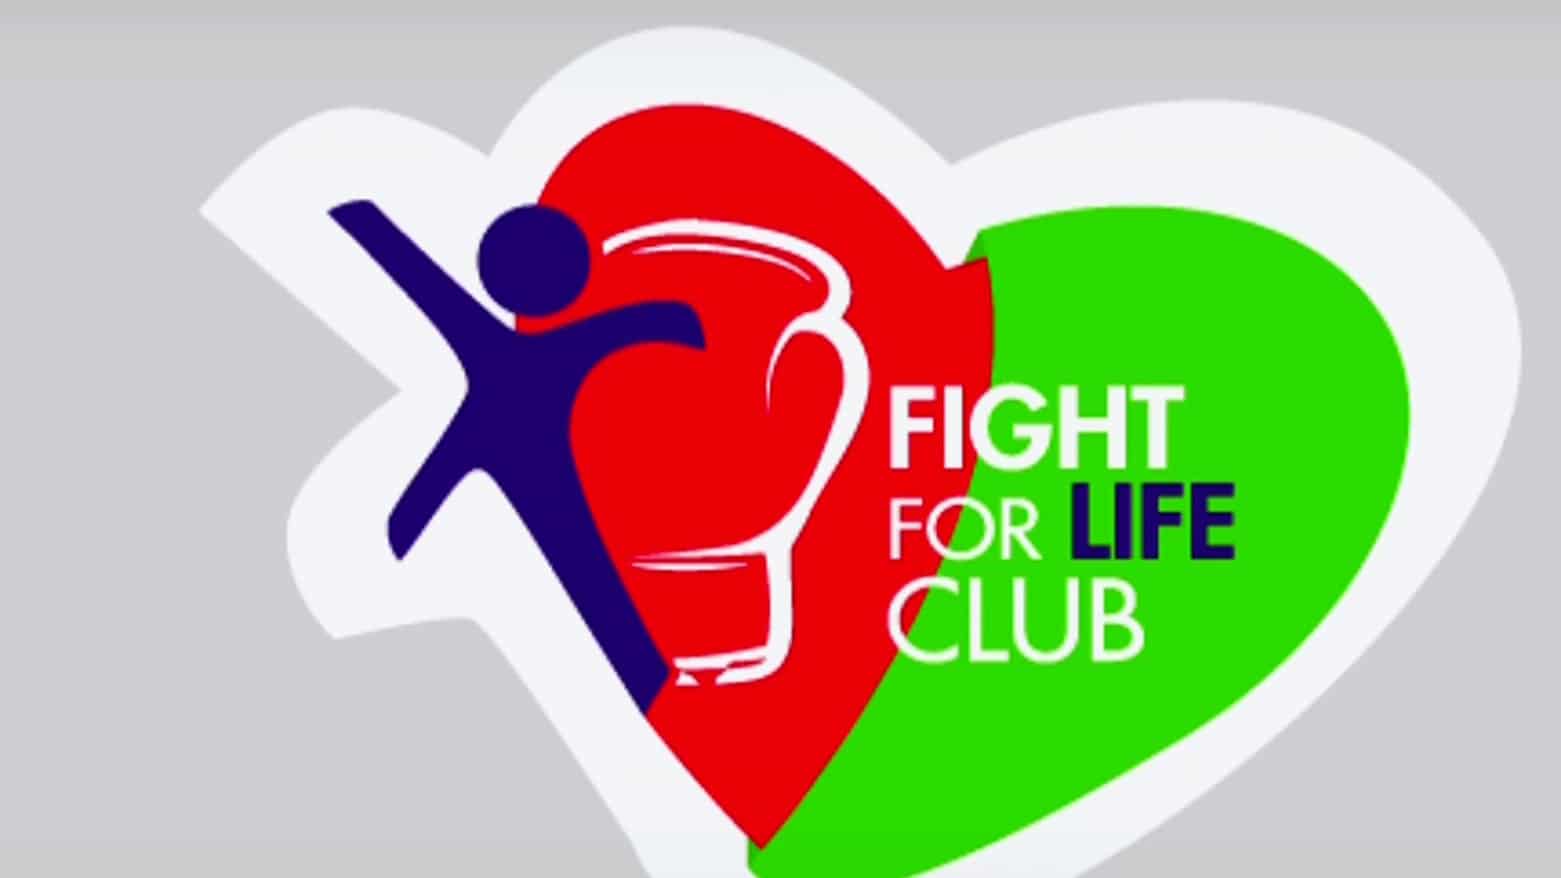 como apoya la fundacion fight for life club a pacientes que necesitan trasplante de higado